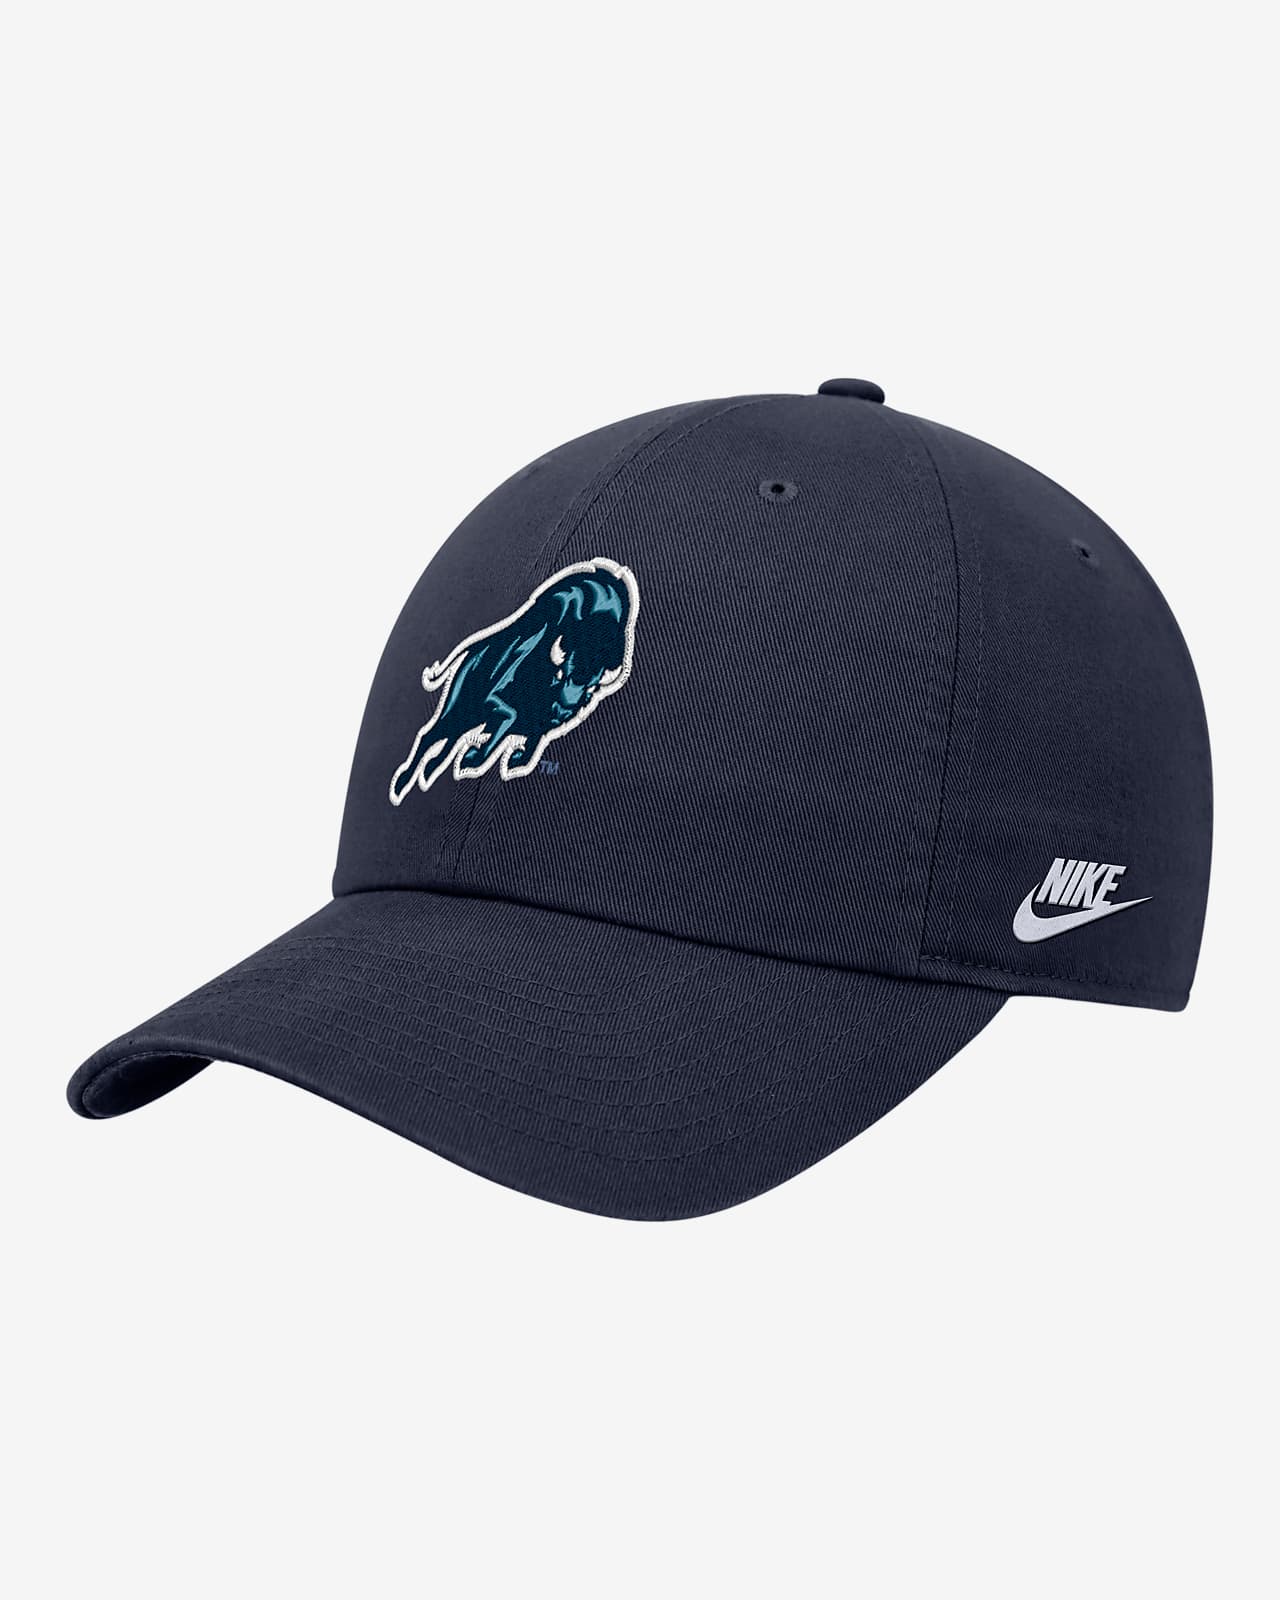 Howard Nike College Adjustable Cap